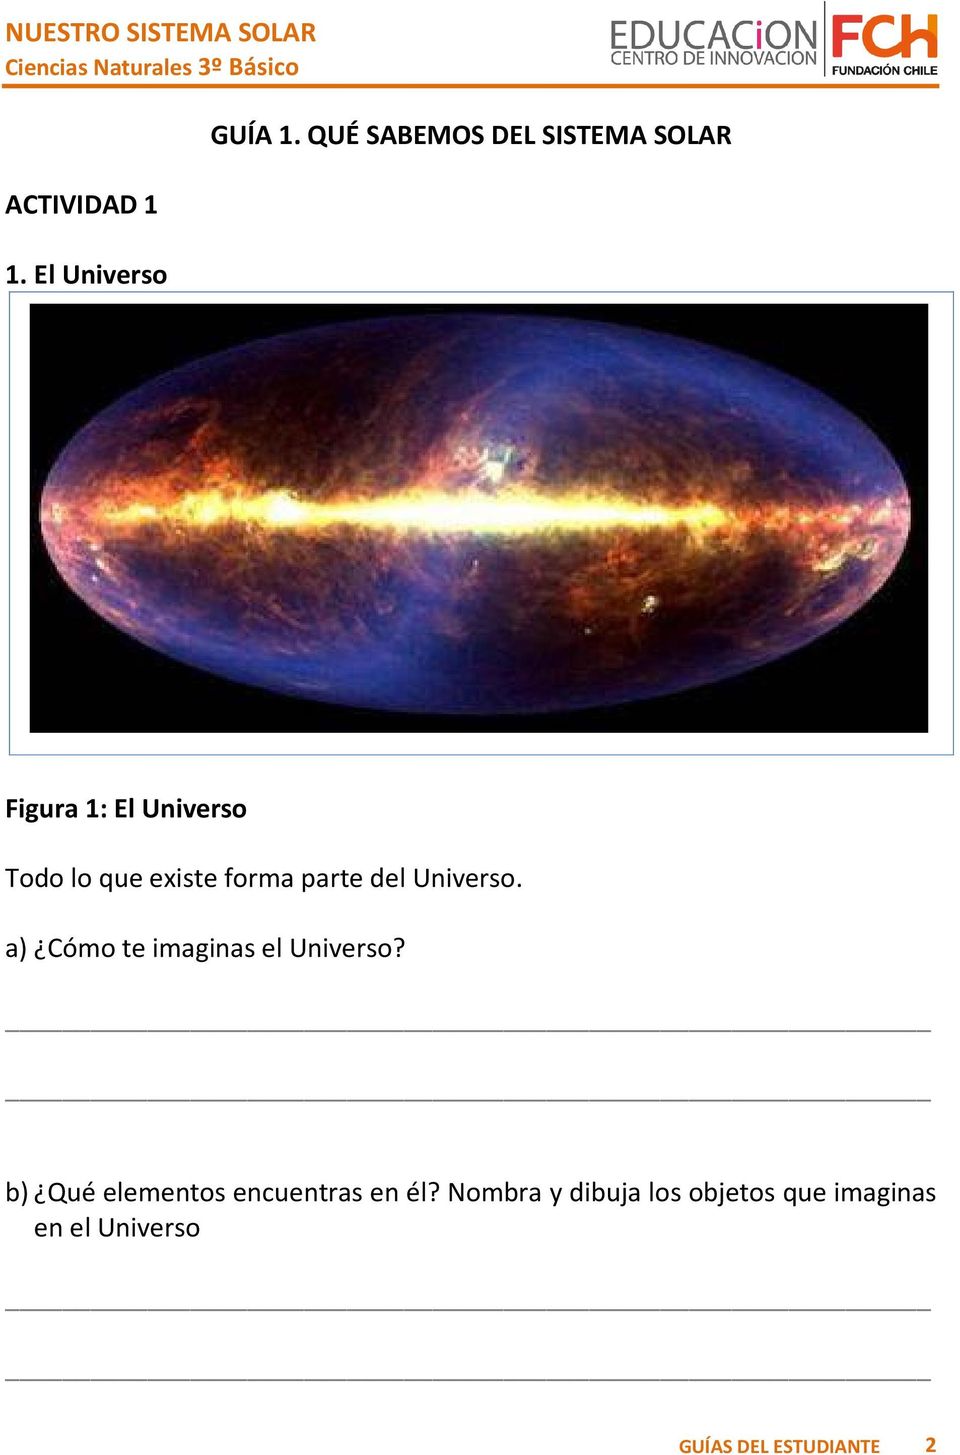 existe forma parte del Universo. a) Cómo te imaginas el Universo?